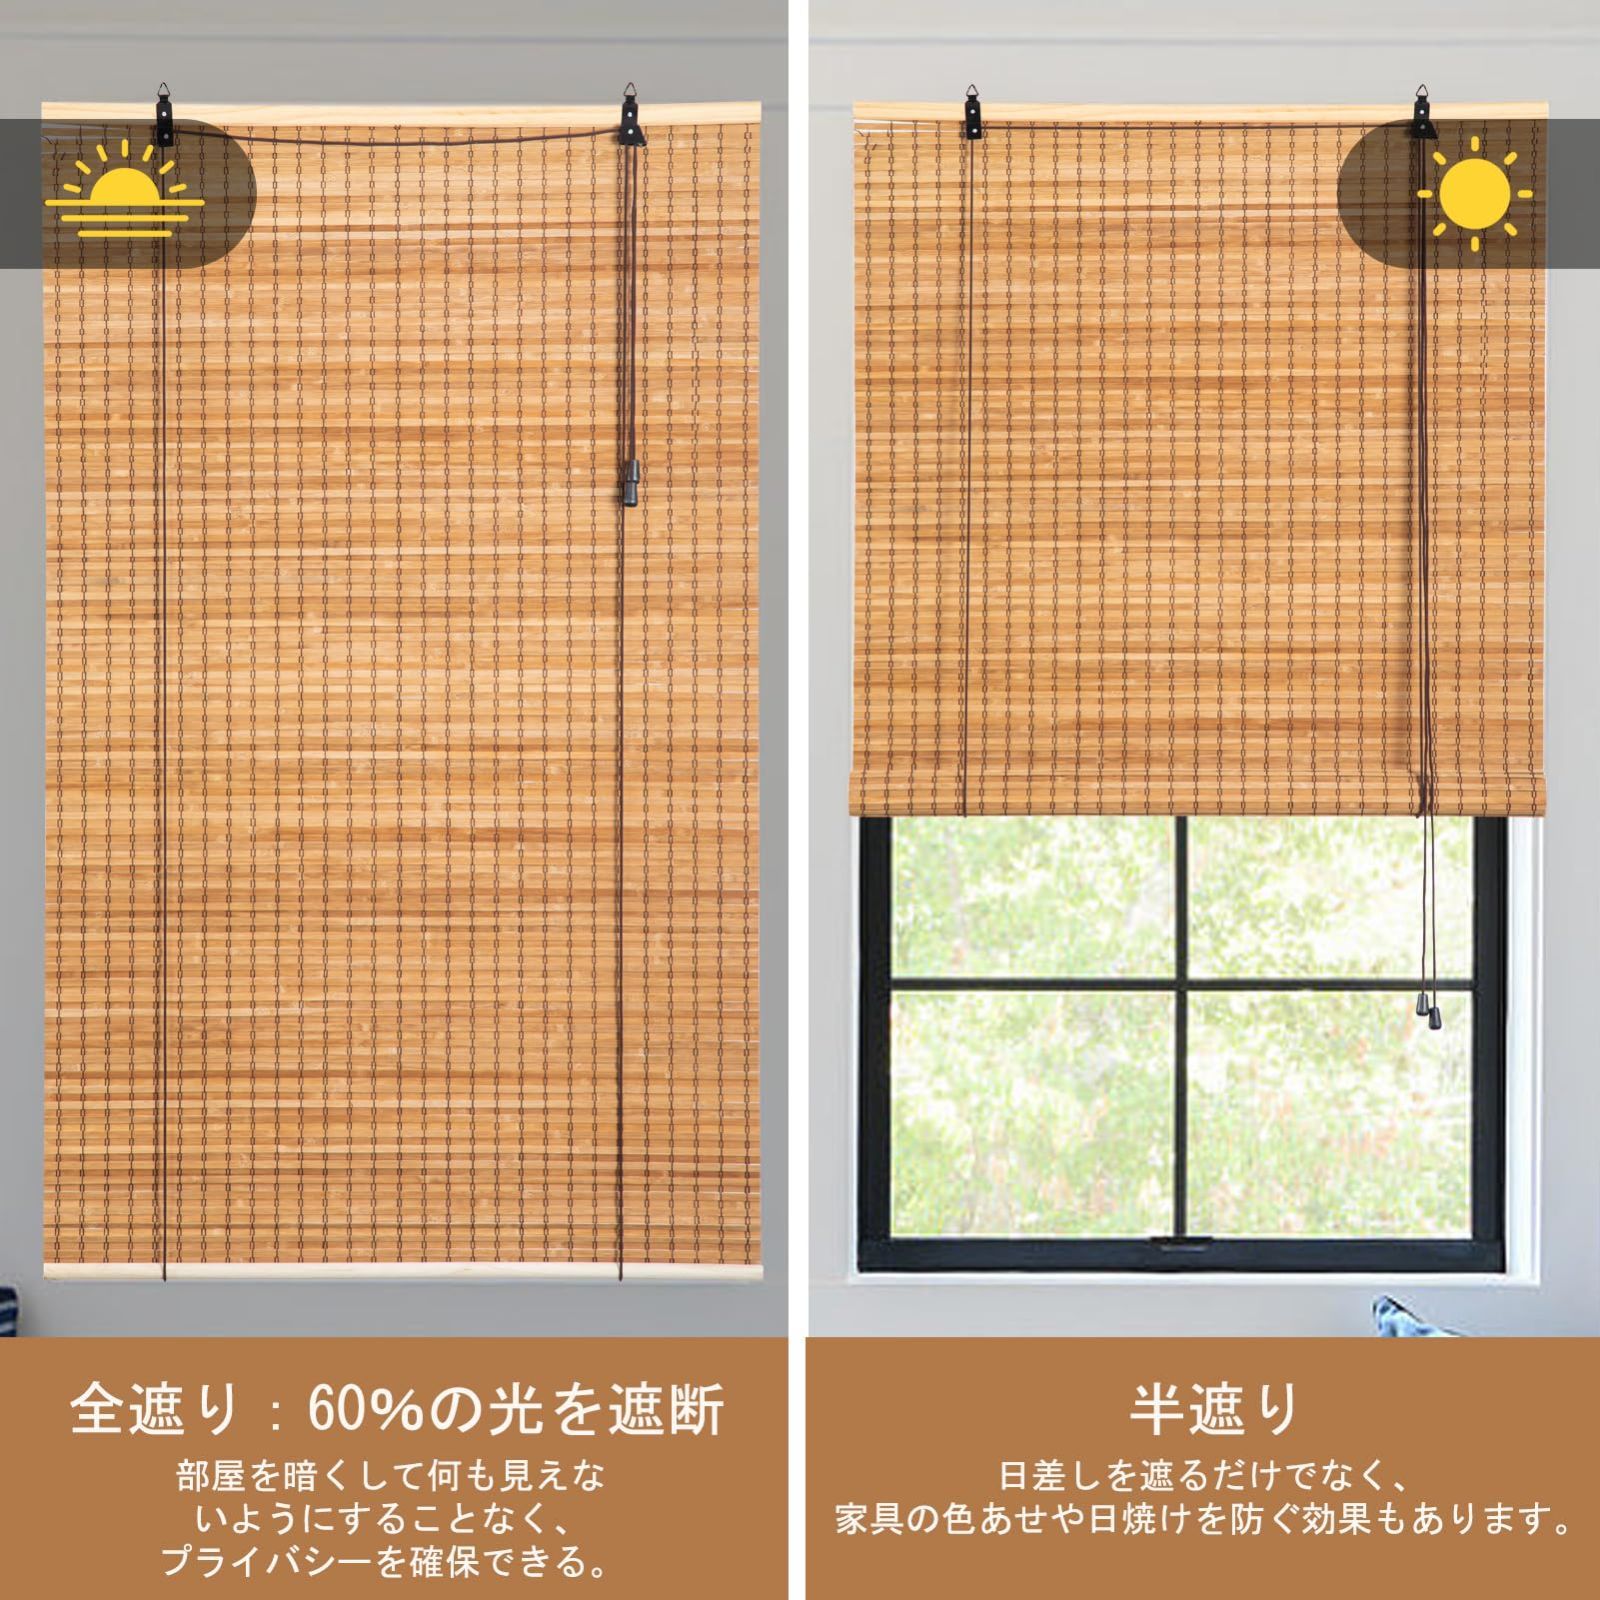 Yitian Bamboo Art 竹すだれ 幅88×丈180cm 2本セット 竹製ロールスクリーン 簾 屋内 和室 洋室 室内 遮光遮熱 目隠し  風通し ロールアップ機能付き ベージュ - メルカリ